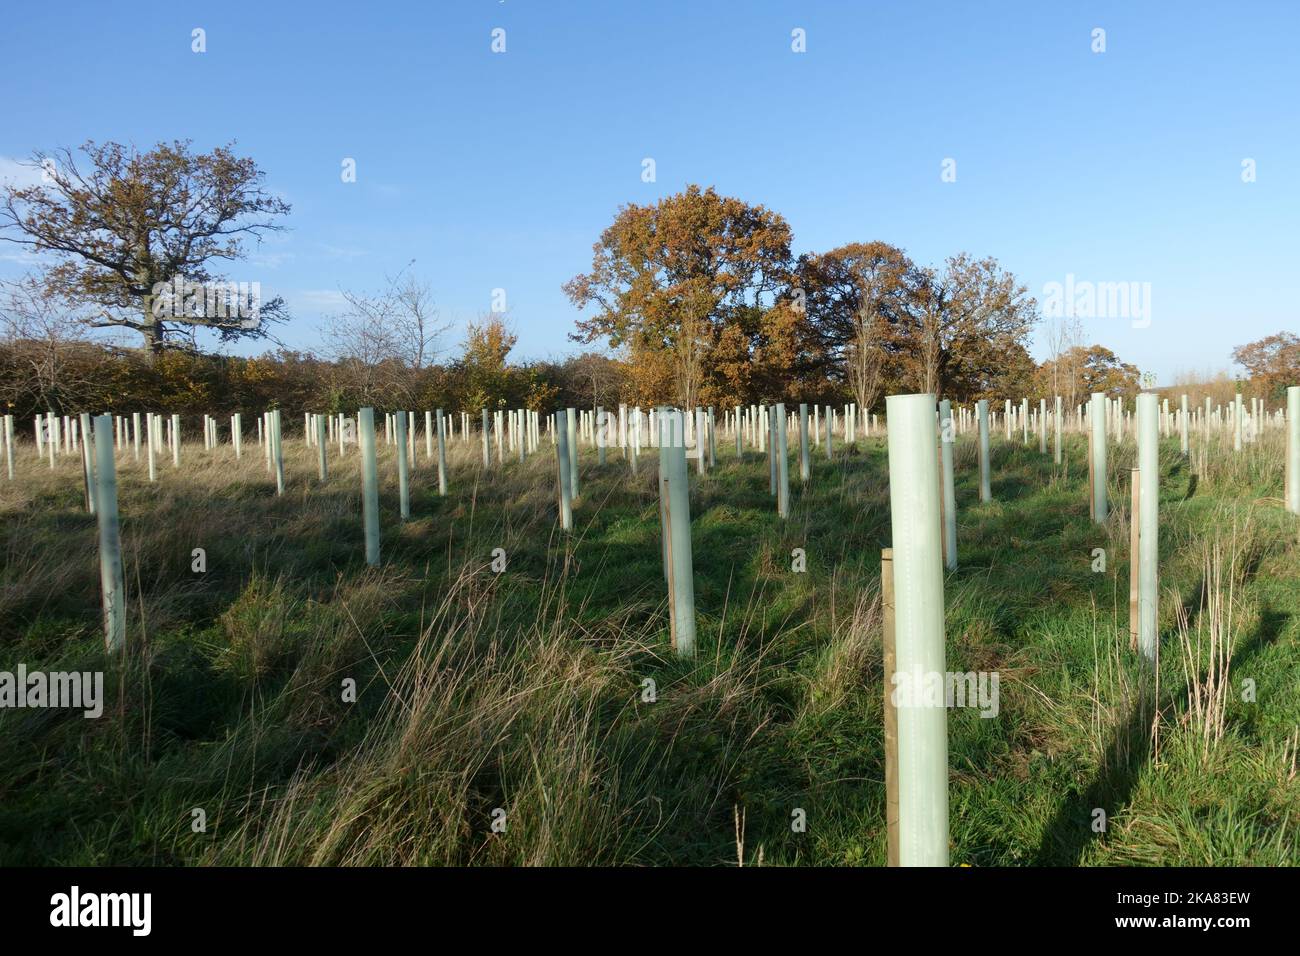 Eine neue Plantage aus Laubbäumen mit Pfosten und Kunststoffwächtern, um Wald um eine einzige große Staueiche zu schaffen, berkshire, November Stockfoto